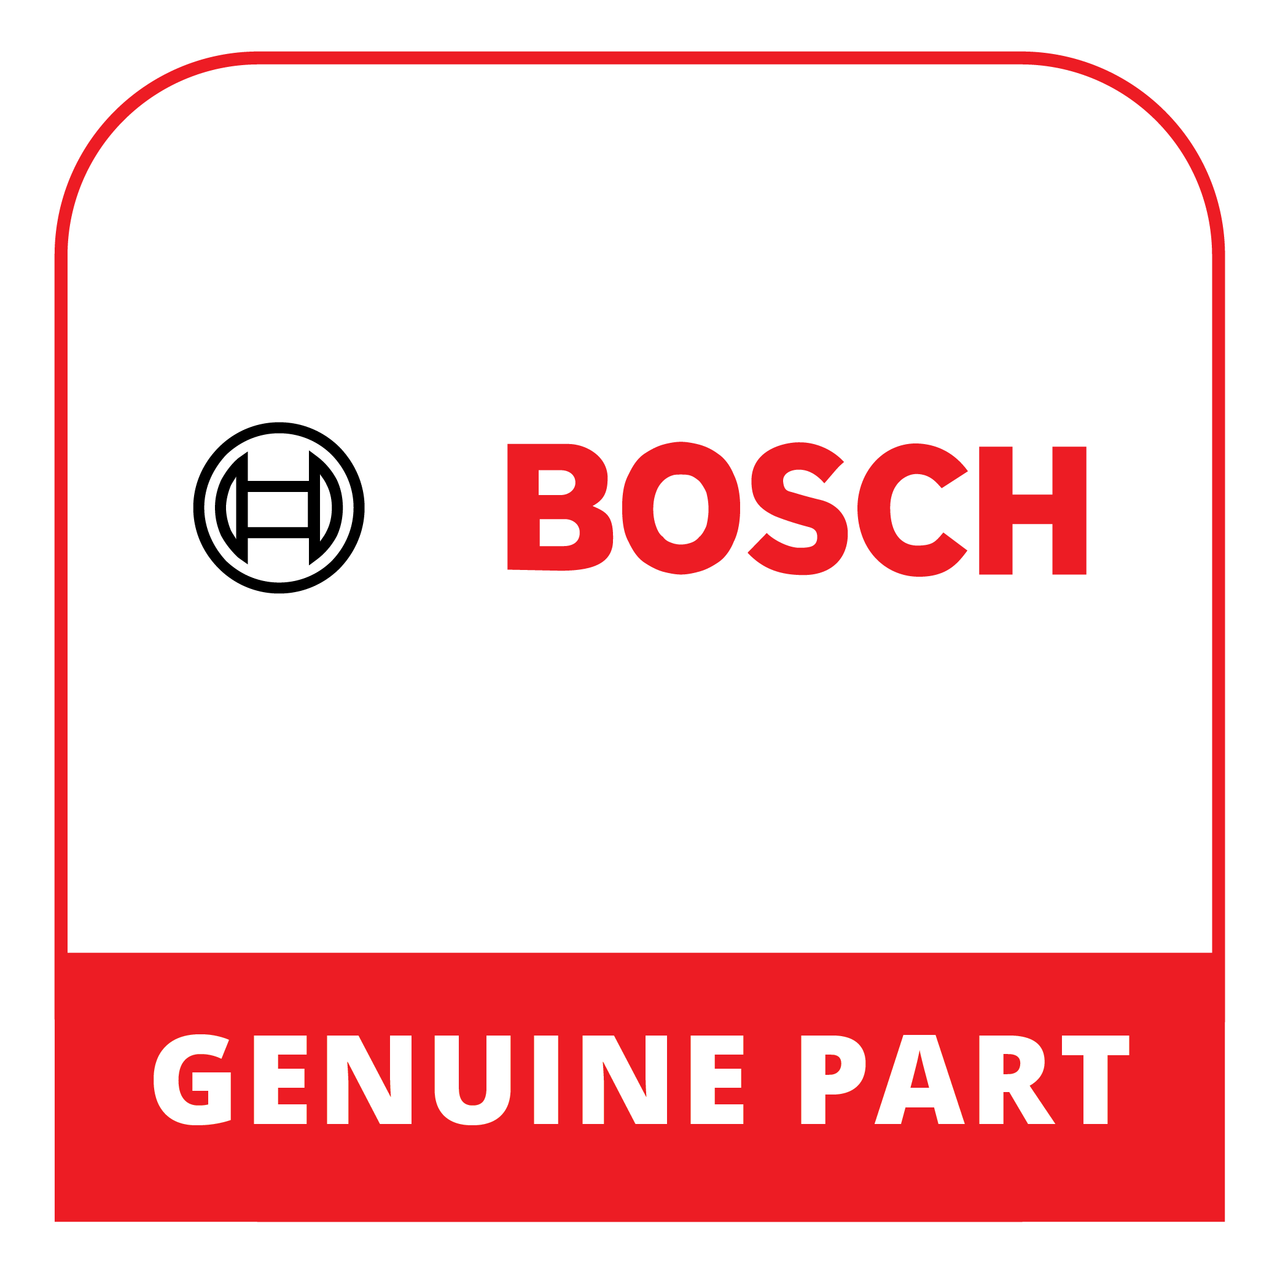 Bosch (Thermador) 10012787 - Door Latch - Genuine Bosch (Thermador) Part